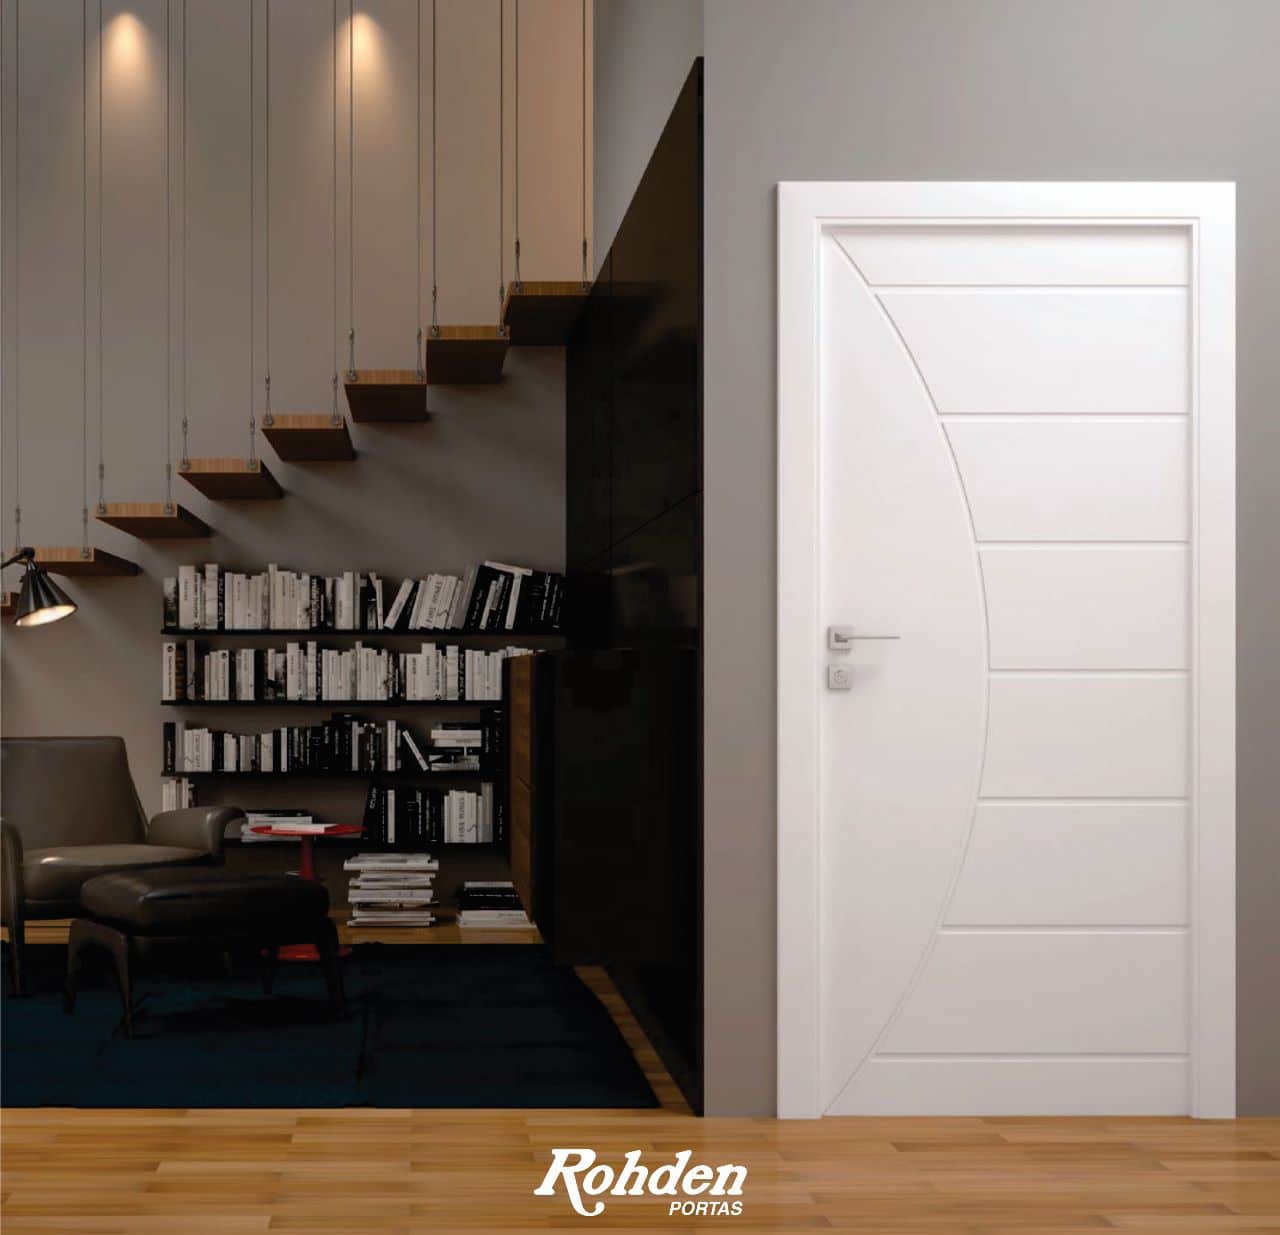 O destaque da sua casa vai ser sua porta! O Kit Porta Pronta Rohden tem uma instalação fácil e rápida, garantindo a sua segurança e elegância em minutos e é a sua mais fácil e bonita solução!